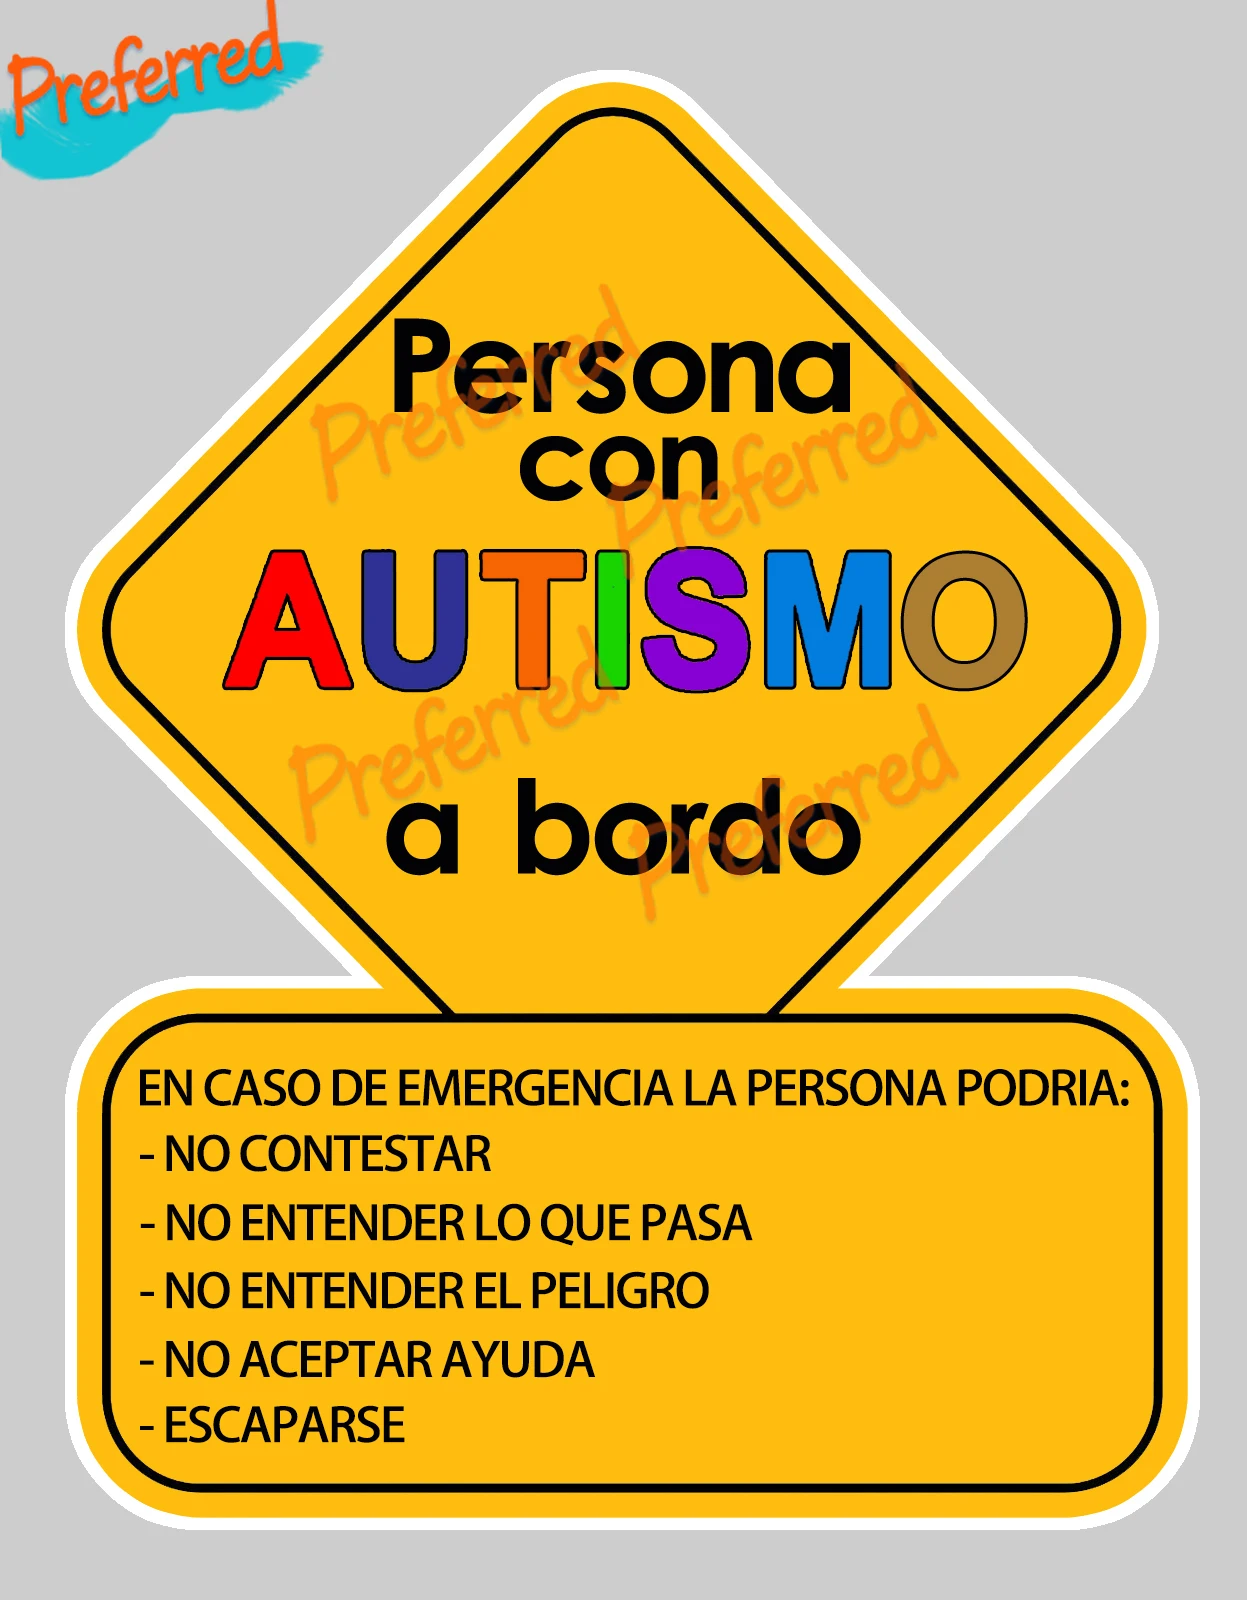 Spanisch LetreroAuto Autismo, Kind auf Die Boot, Baby In Die Auto, aufkleber Laptop Helm Stamm Wand Vinyl Auto Aufkleber